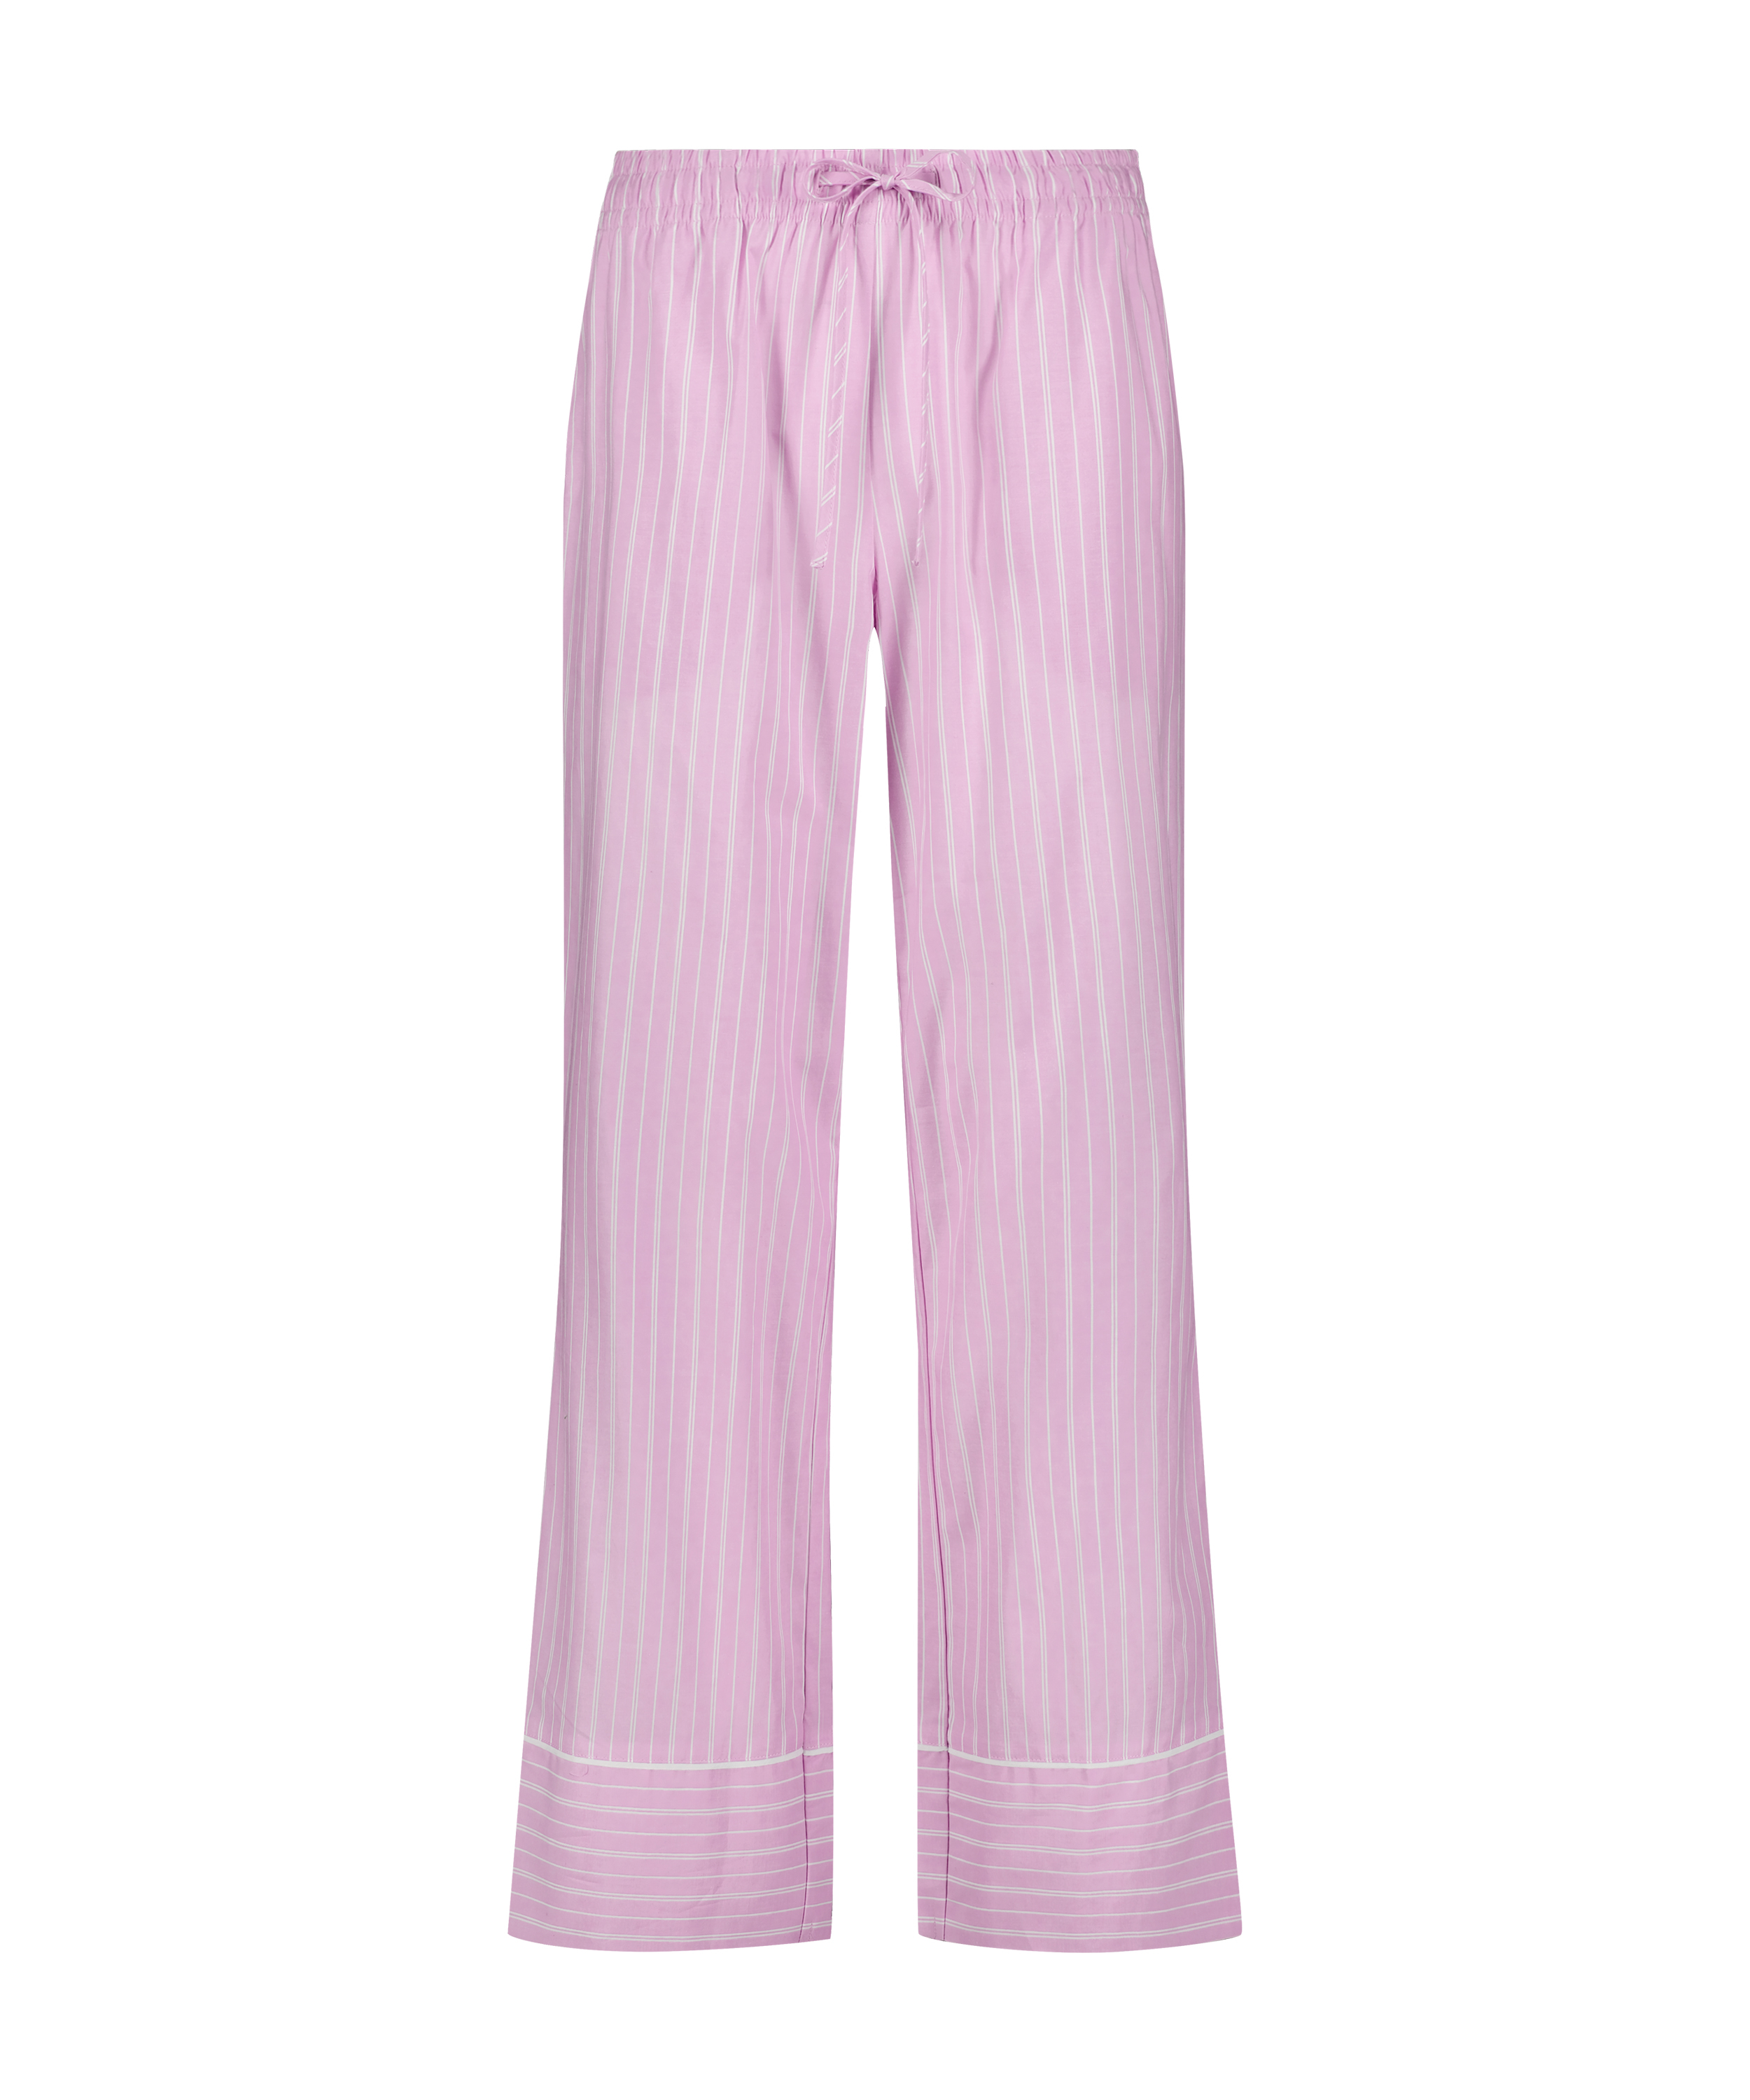 Pantalón de pijama Stripy, Rosa, main